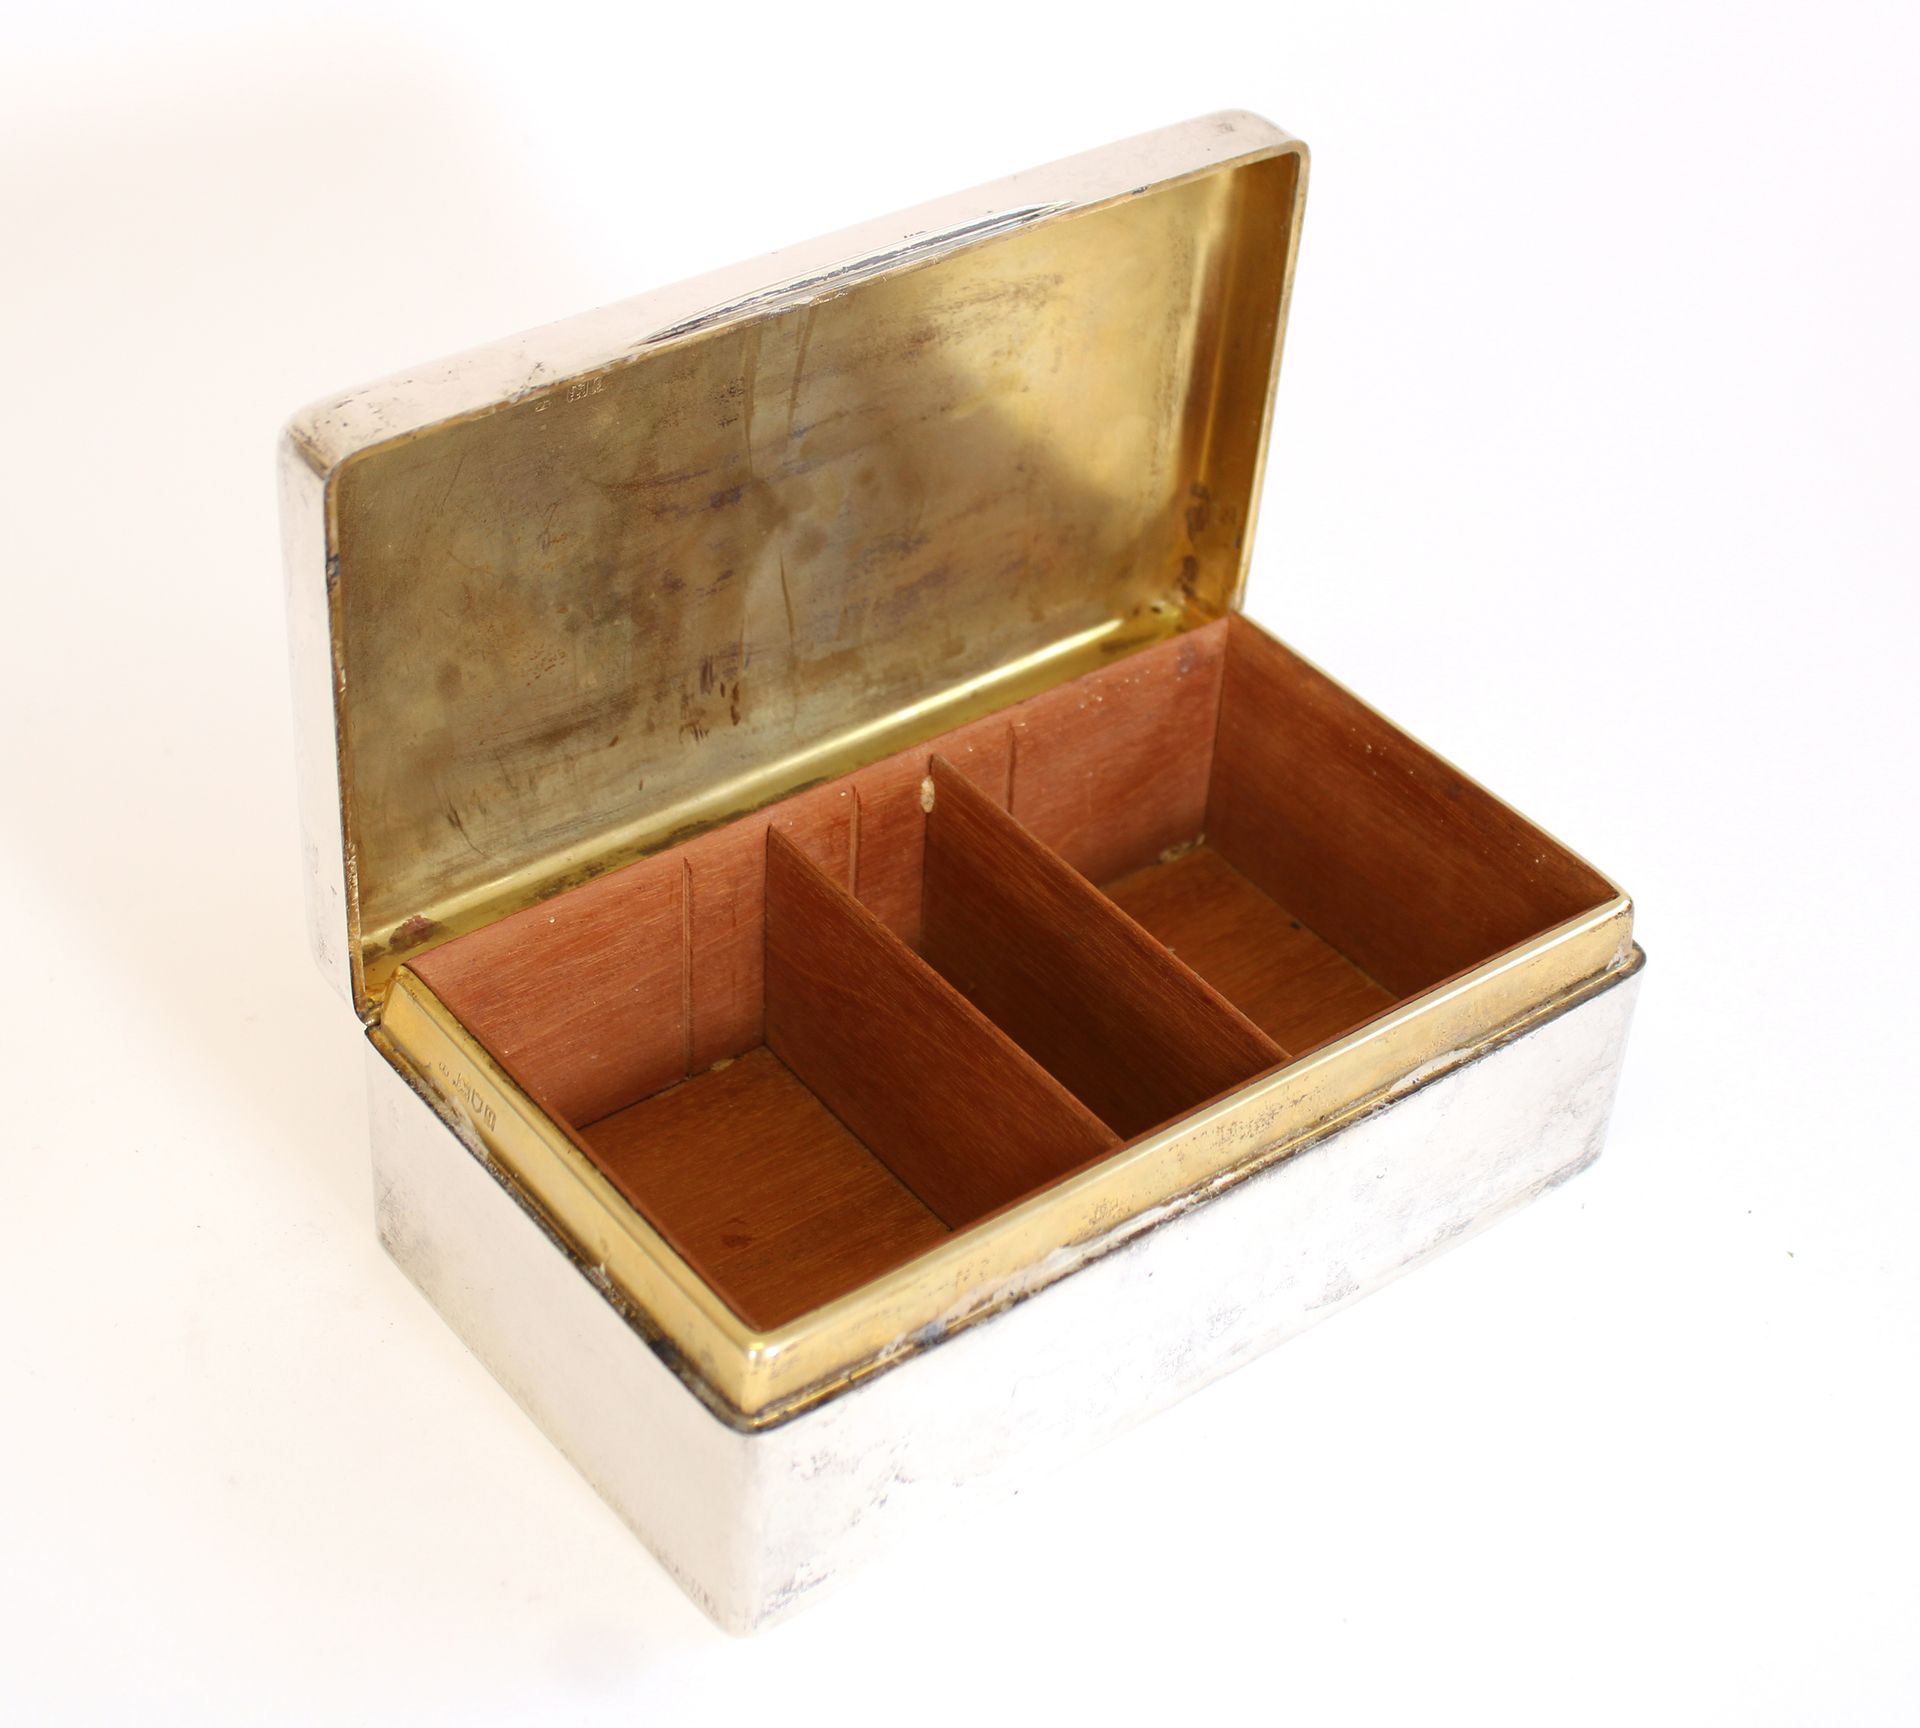 Null 英国银质扑克牌盒，内部为木质，有三个隔间，盖子上刻有1912年的题词
长. 19.8 x 宽. 11.4 x 高. 7 cm
毛重：1051克。